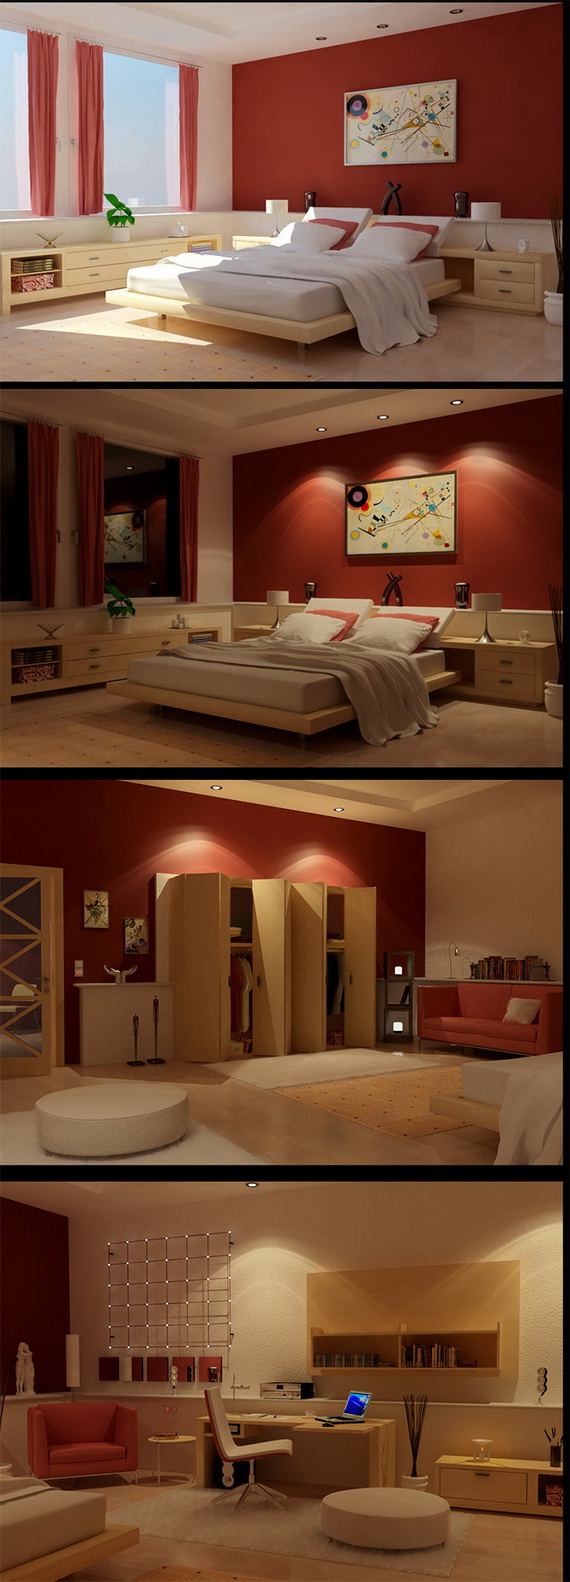 แต่งห้องนอนสุดเจิด...ด้วยสีแดงที่มองเห็นแต่ไกล - ตกแต่งห้องนอน - แบบห้องนอนสีสด - ห้องนอนสีแดง - แต่งห้องสีแดง - ห้องนอนเฉดสีแดง